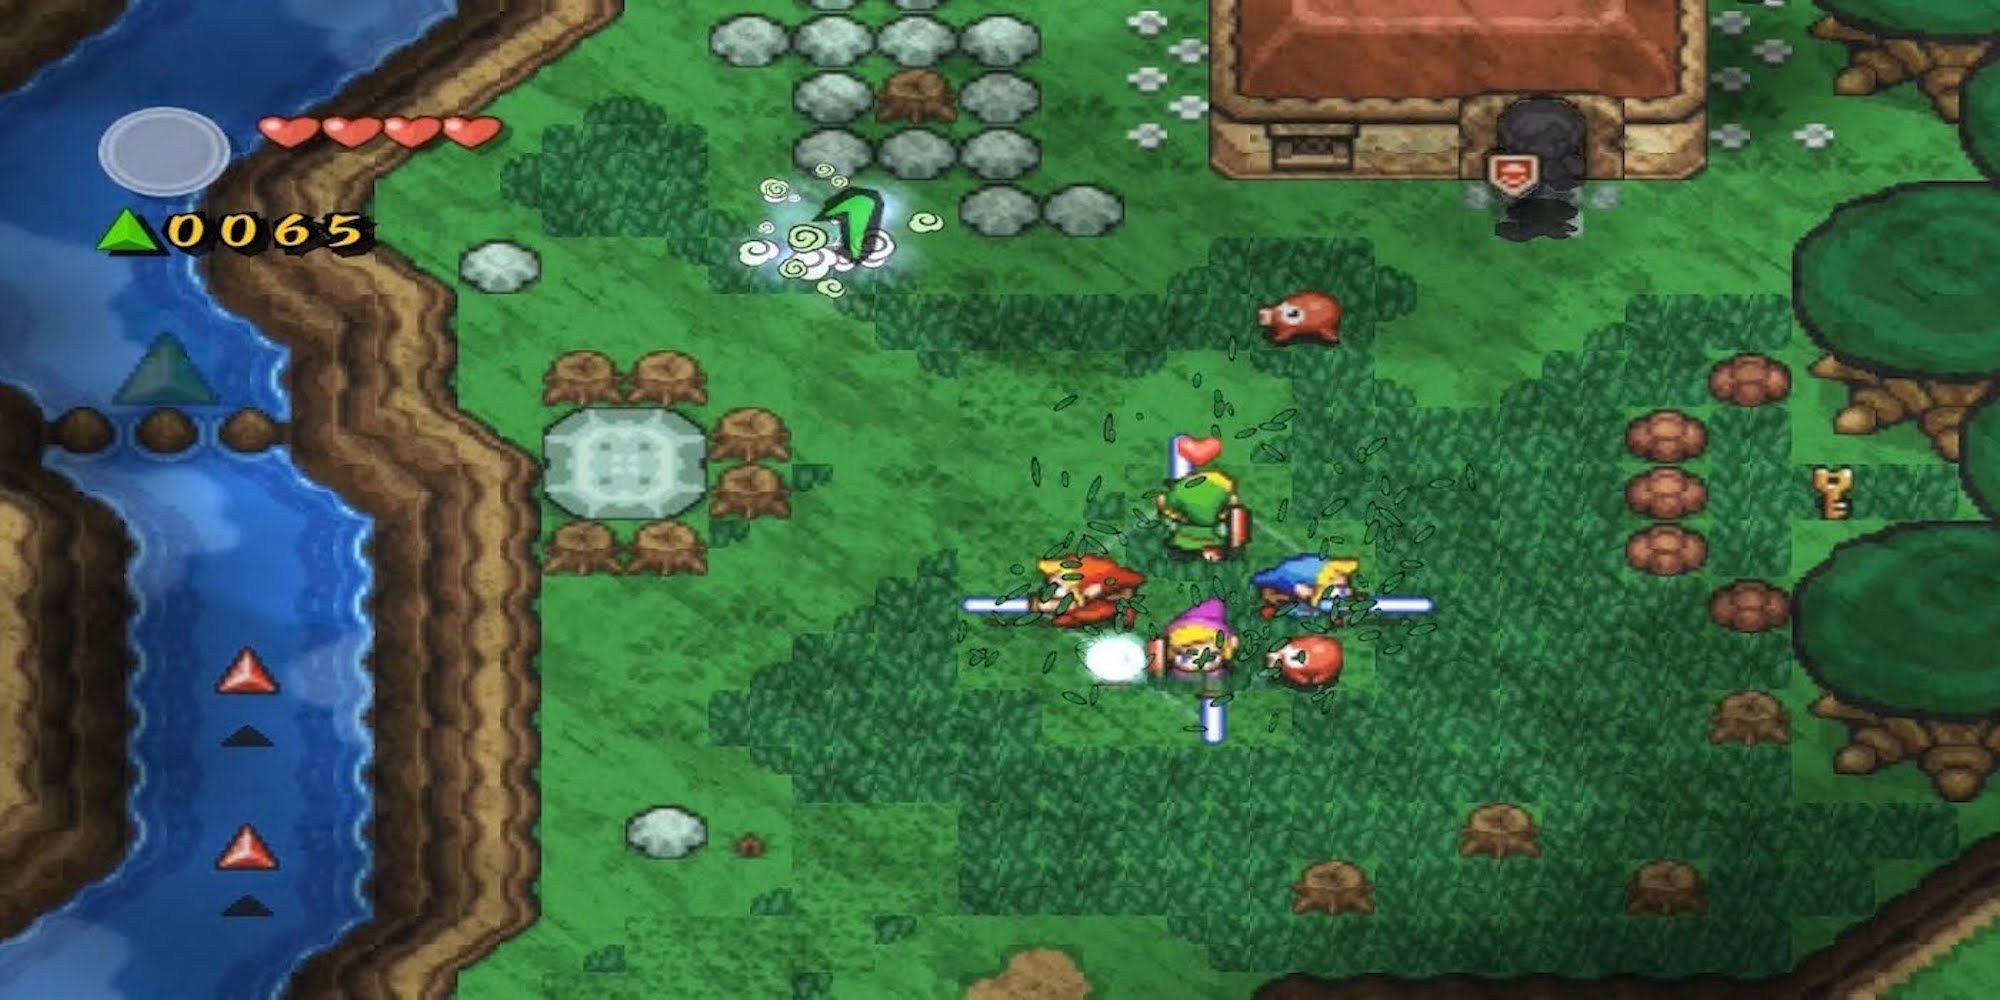 Fighting enemies in The Legend of Zelda Four Swords Adventures